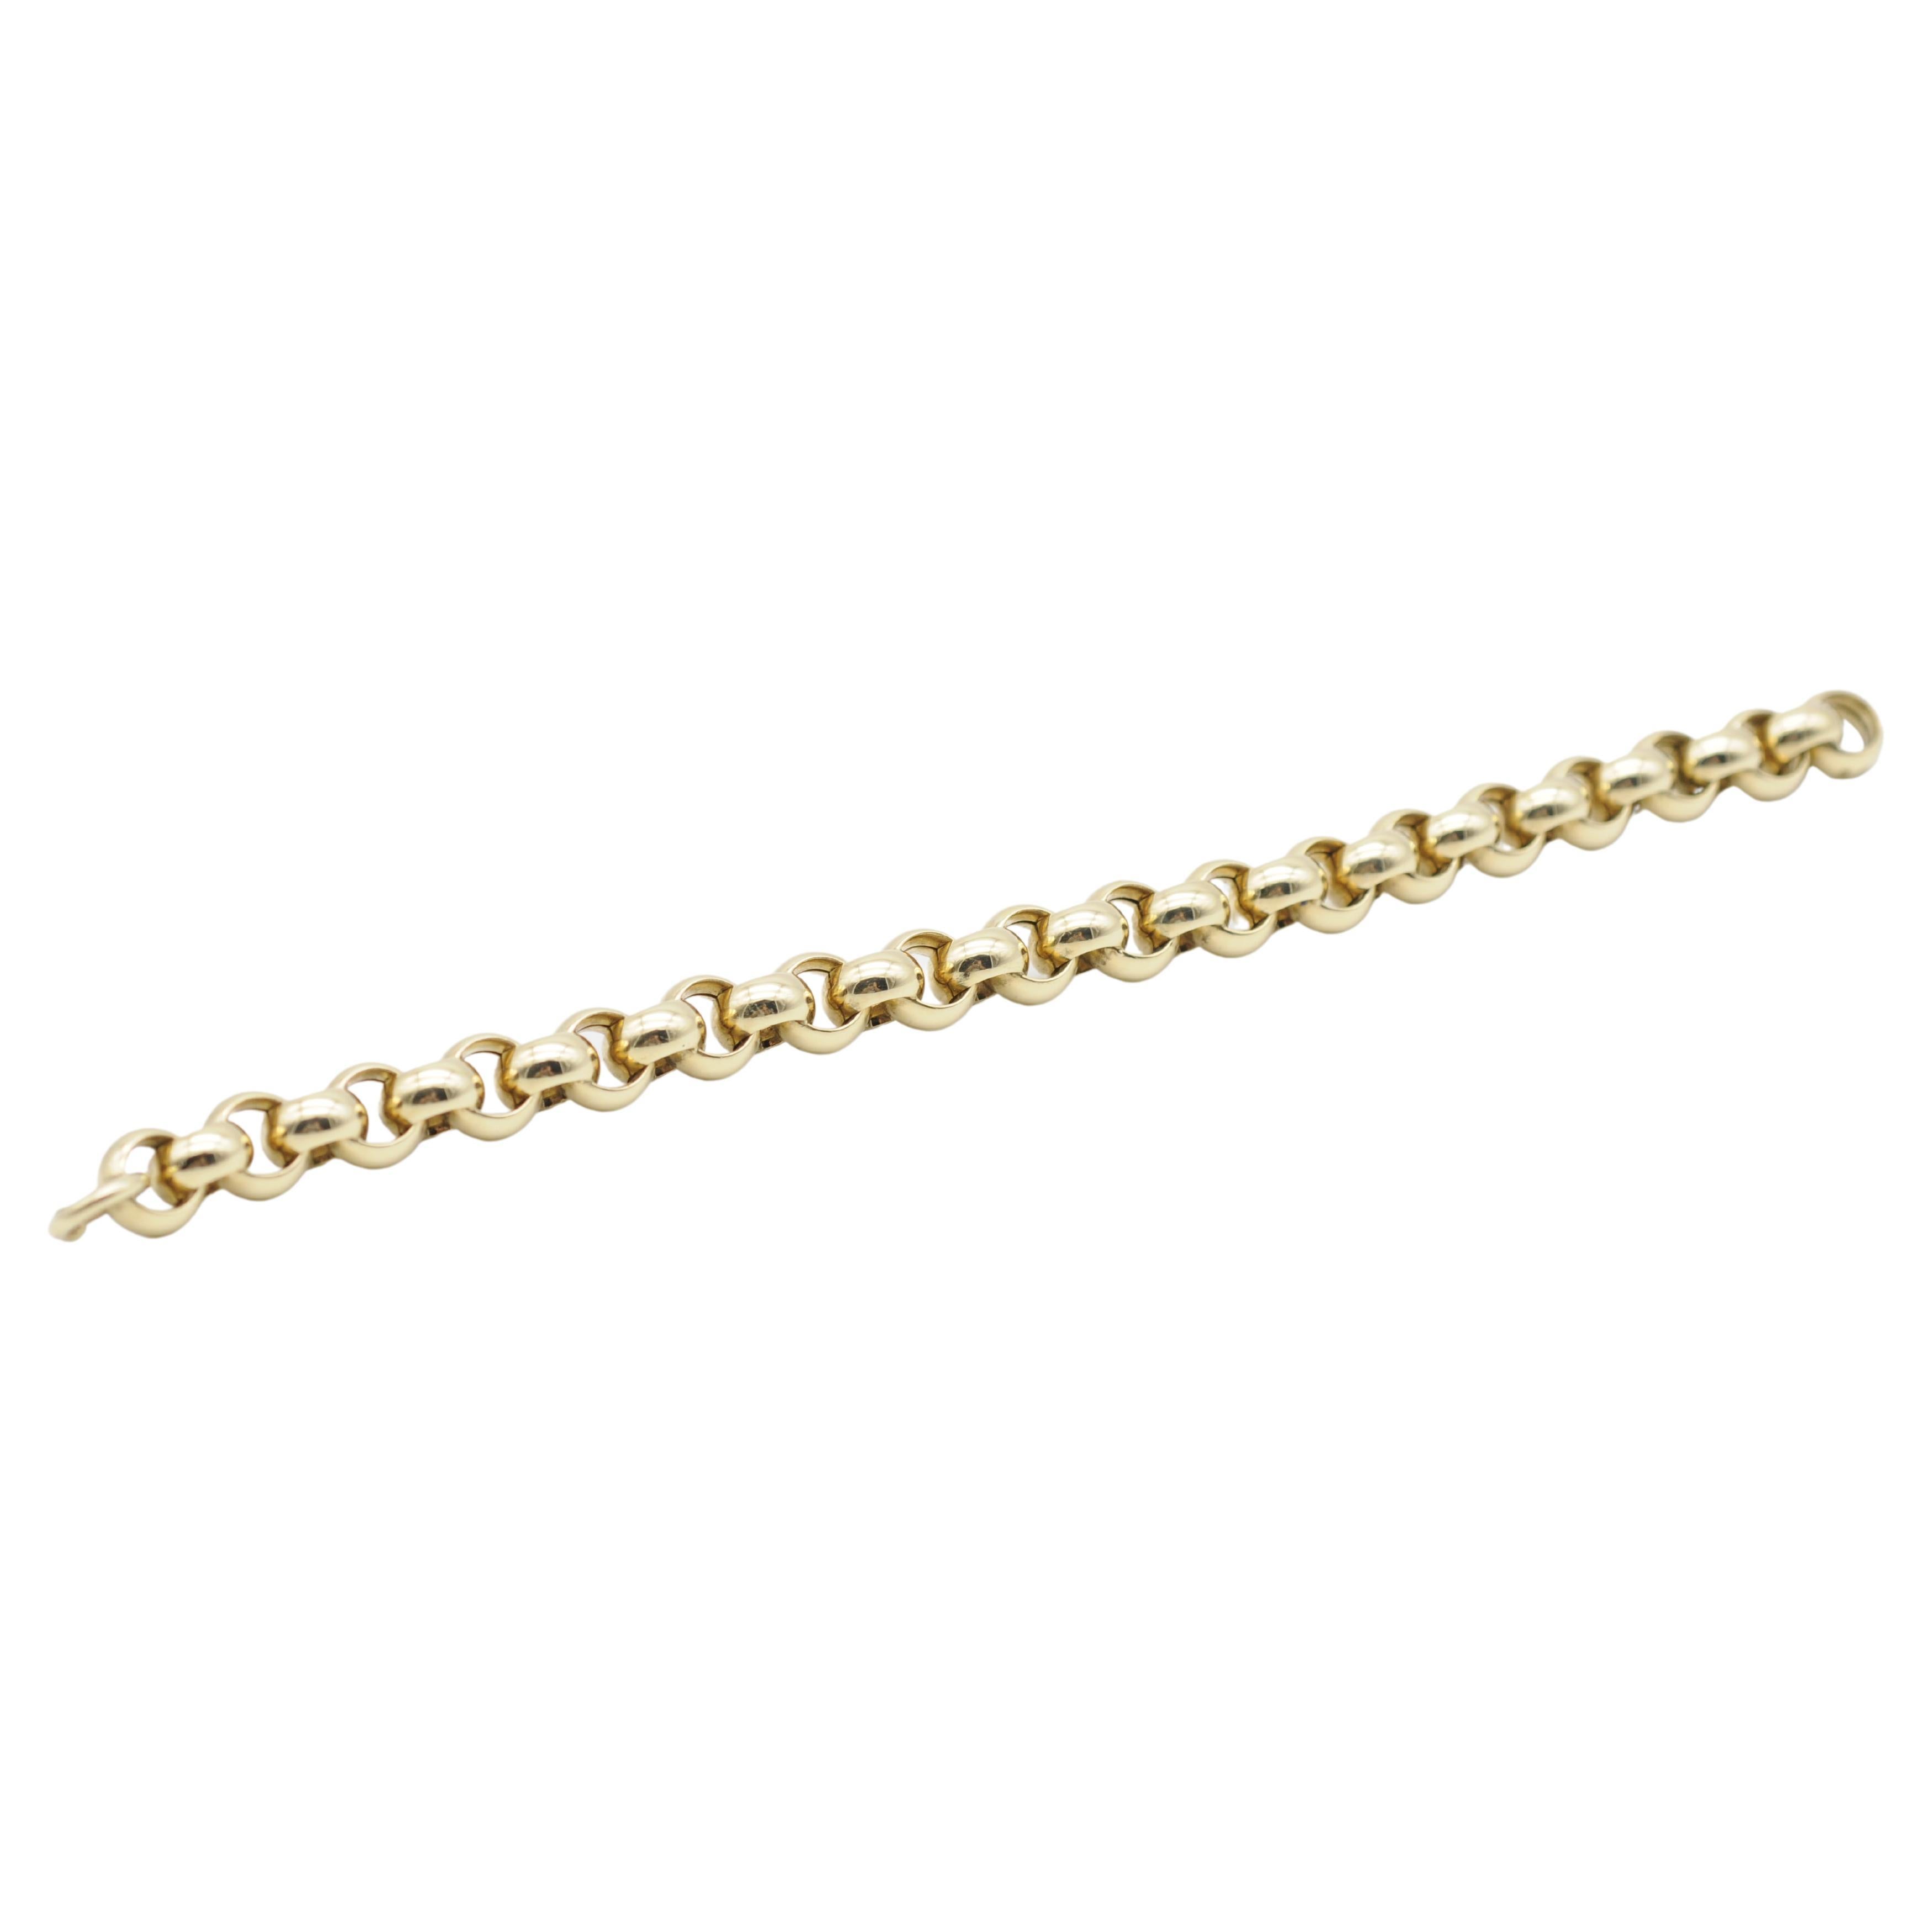 Le bracelet à maillons en or jaune 14k est un bijou exquis qui ne manquera pas de faire tourner les têtes et d'attirer l'attention. Ce superbe bracelet présente un design épais et luxueux qui dégage un air de sophistication et d'élégance.

Fabriqué